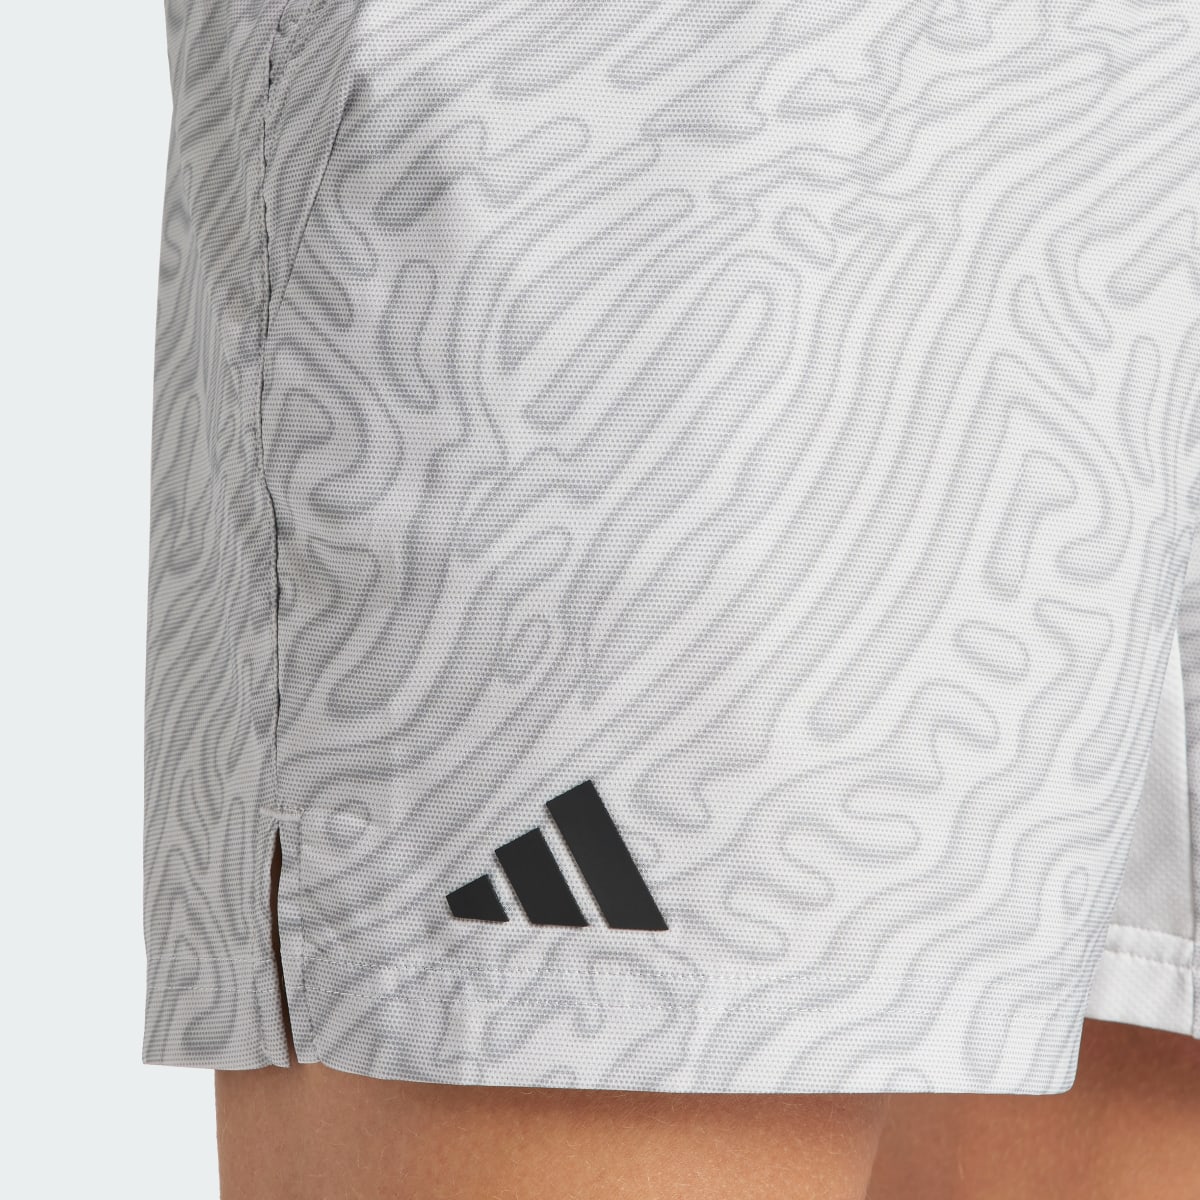 Adidas Tennis HEAT.RDY Pro Printed Ergo 7-Inch Shorts. 5